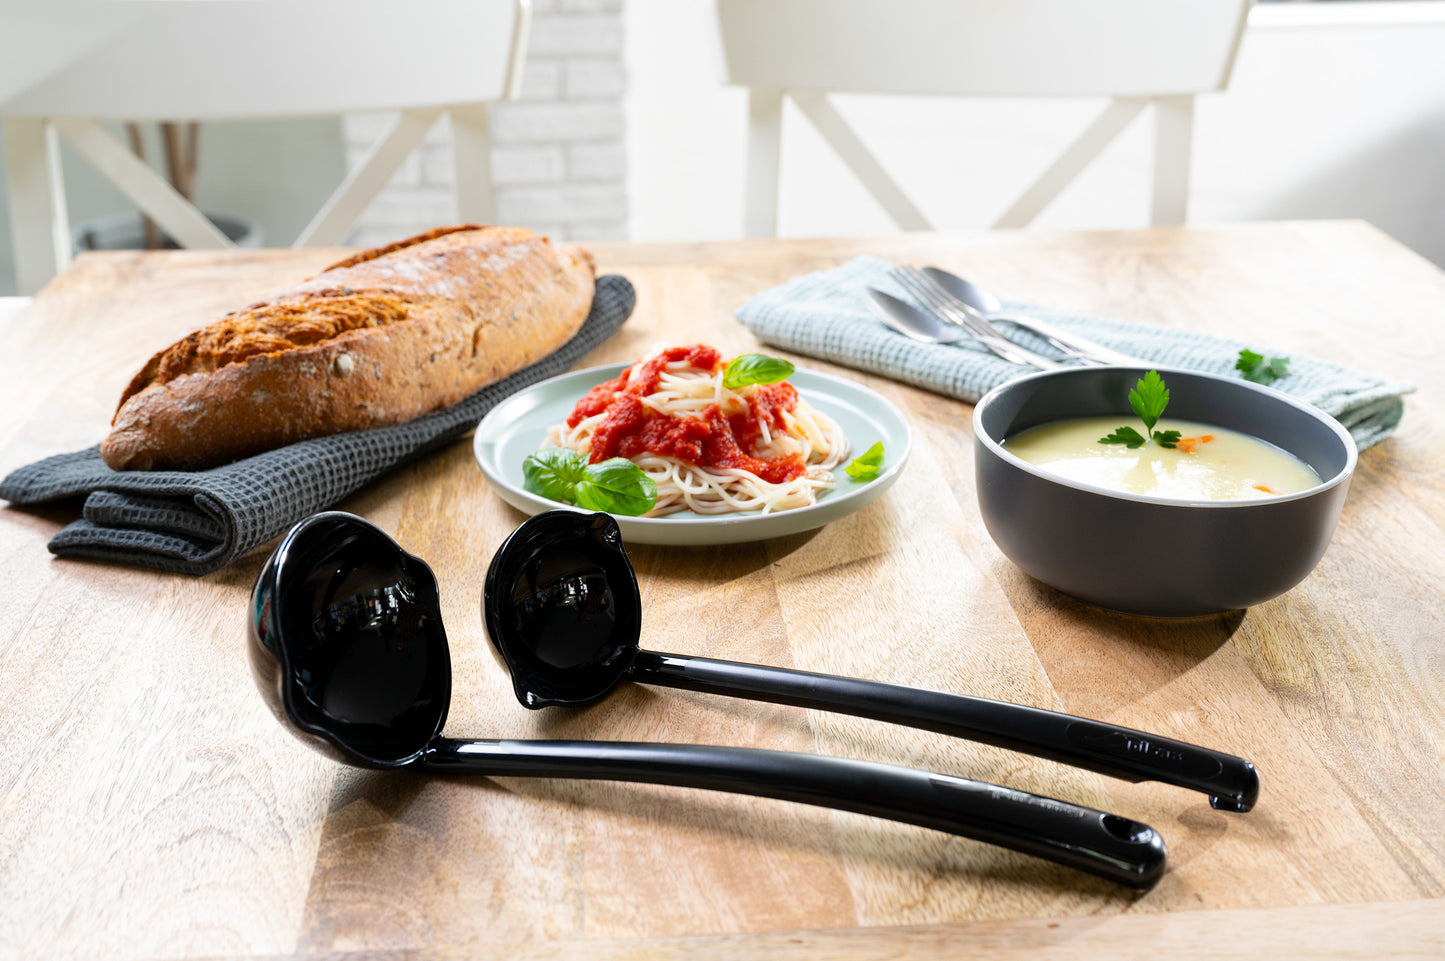 Large Soup Ladle - Flatware Soup Ladles To Serve Soups And Sauces